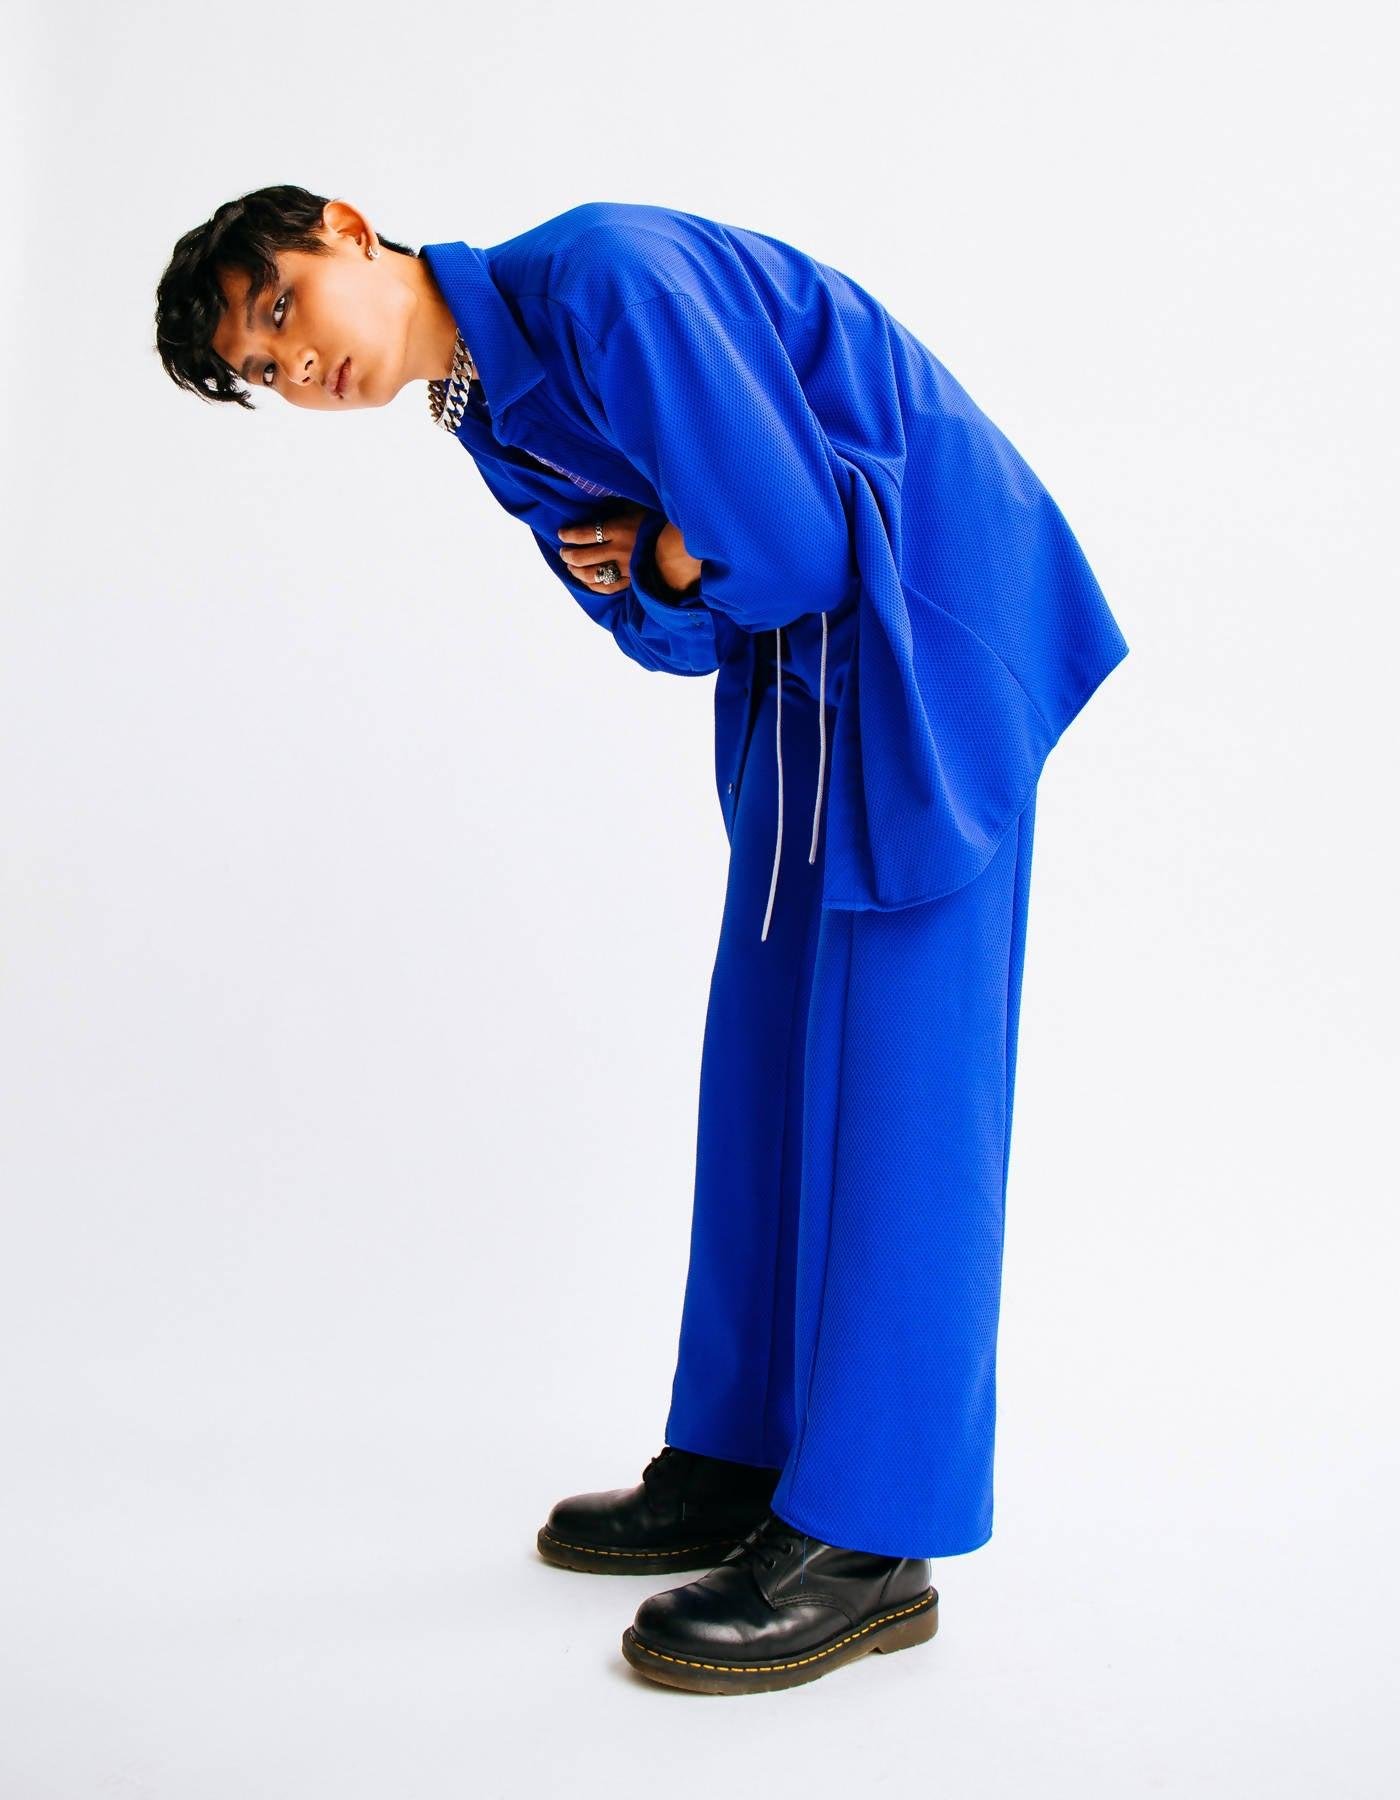 Cobalt Shirt Jacket / Dress by CIARA ALLEN DESIGNS